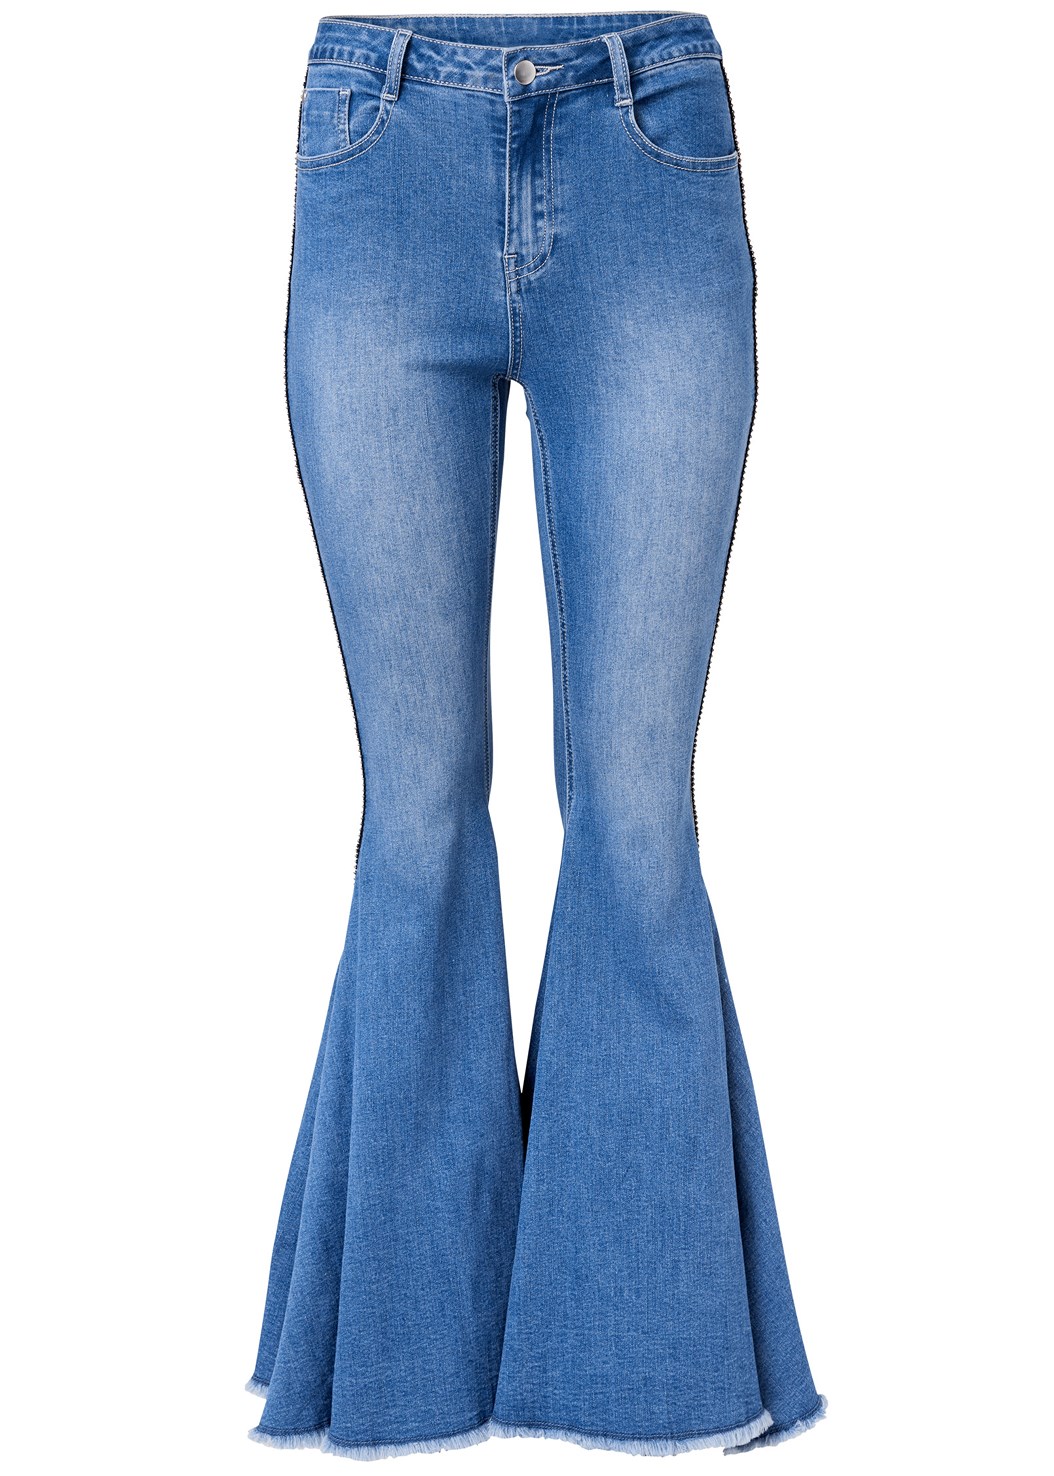 Plus Size Extreme Flare Jeans in Medium Wash | VENUS